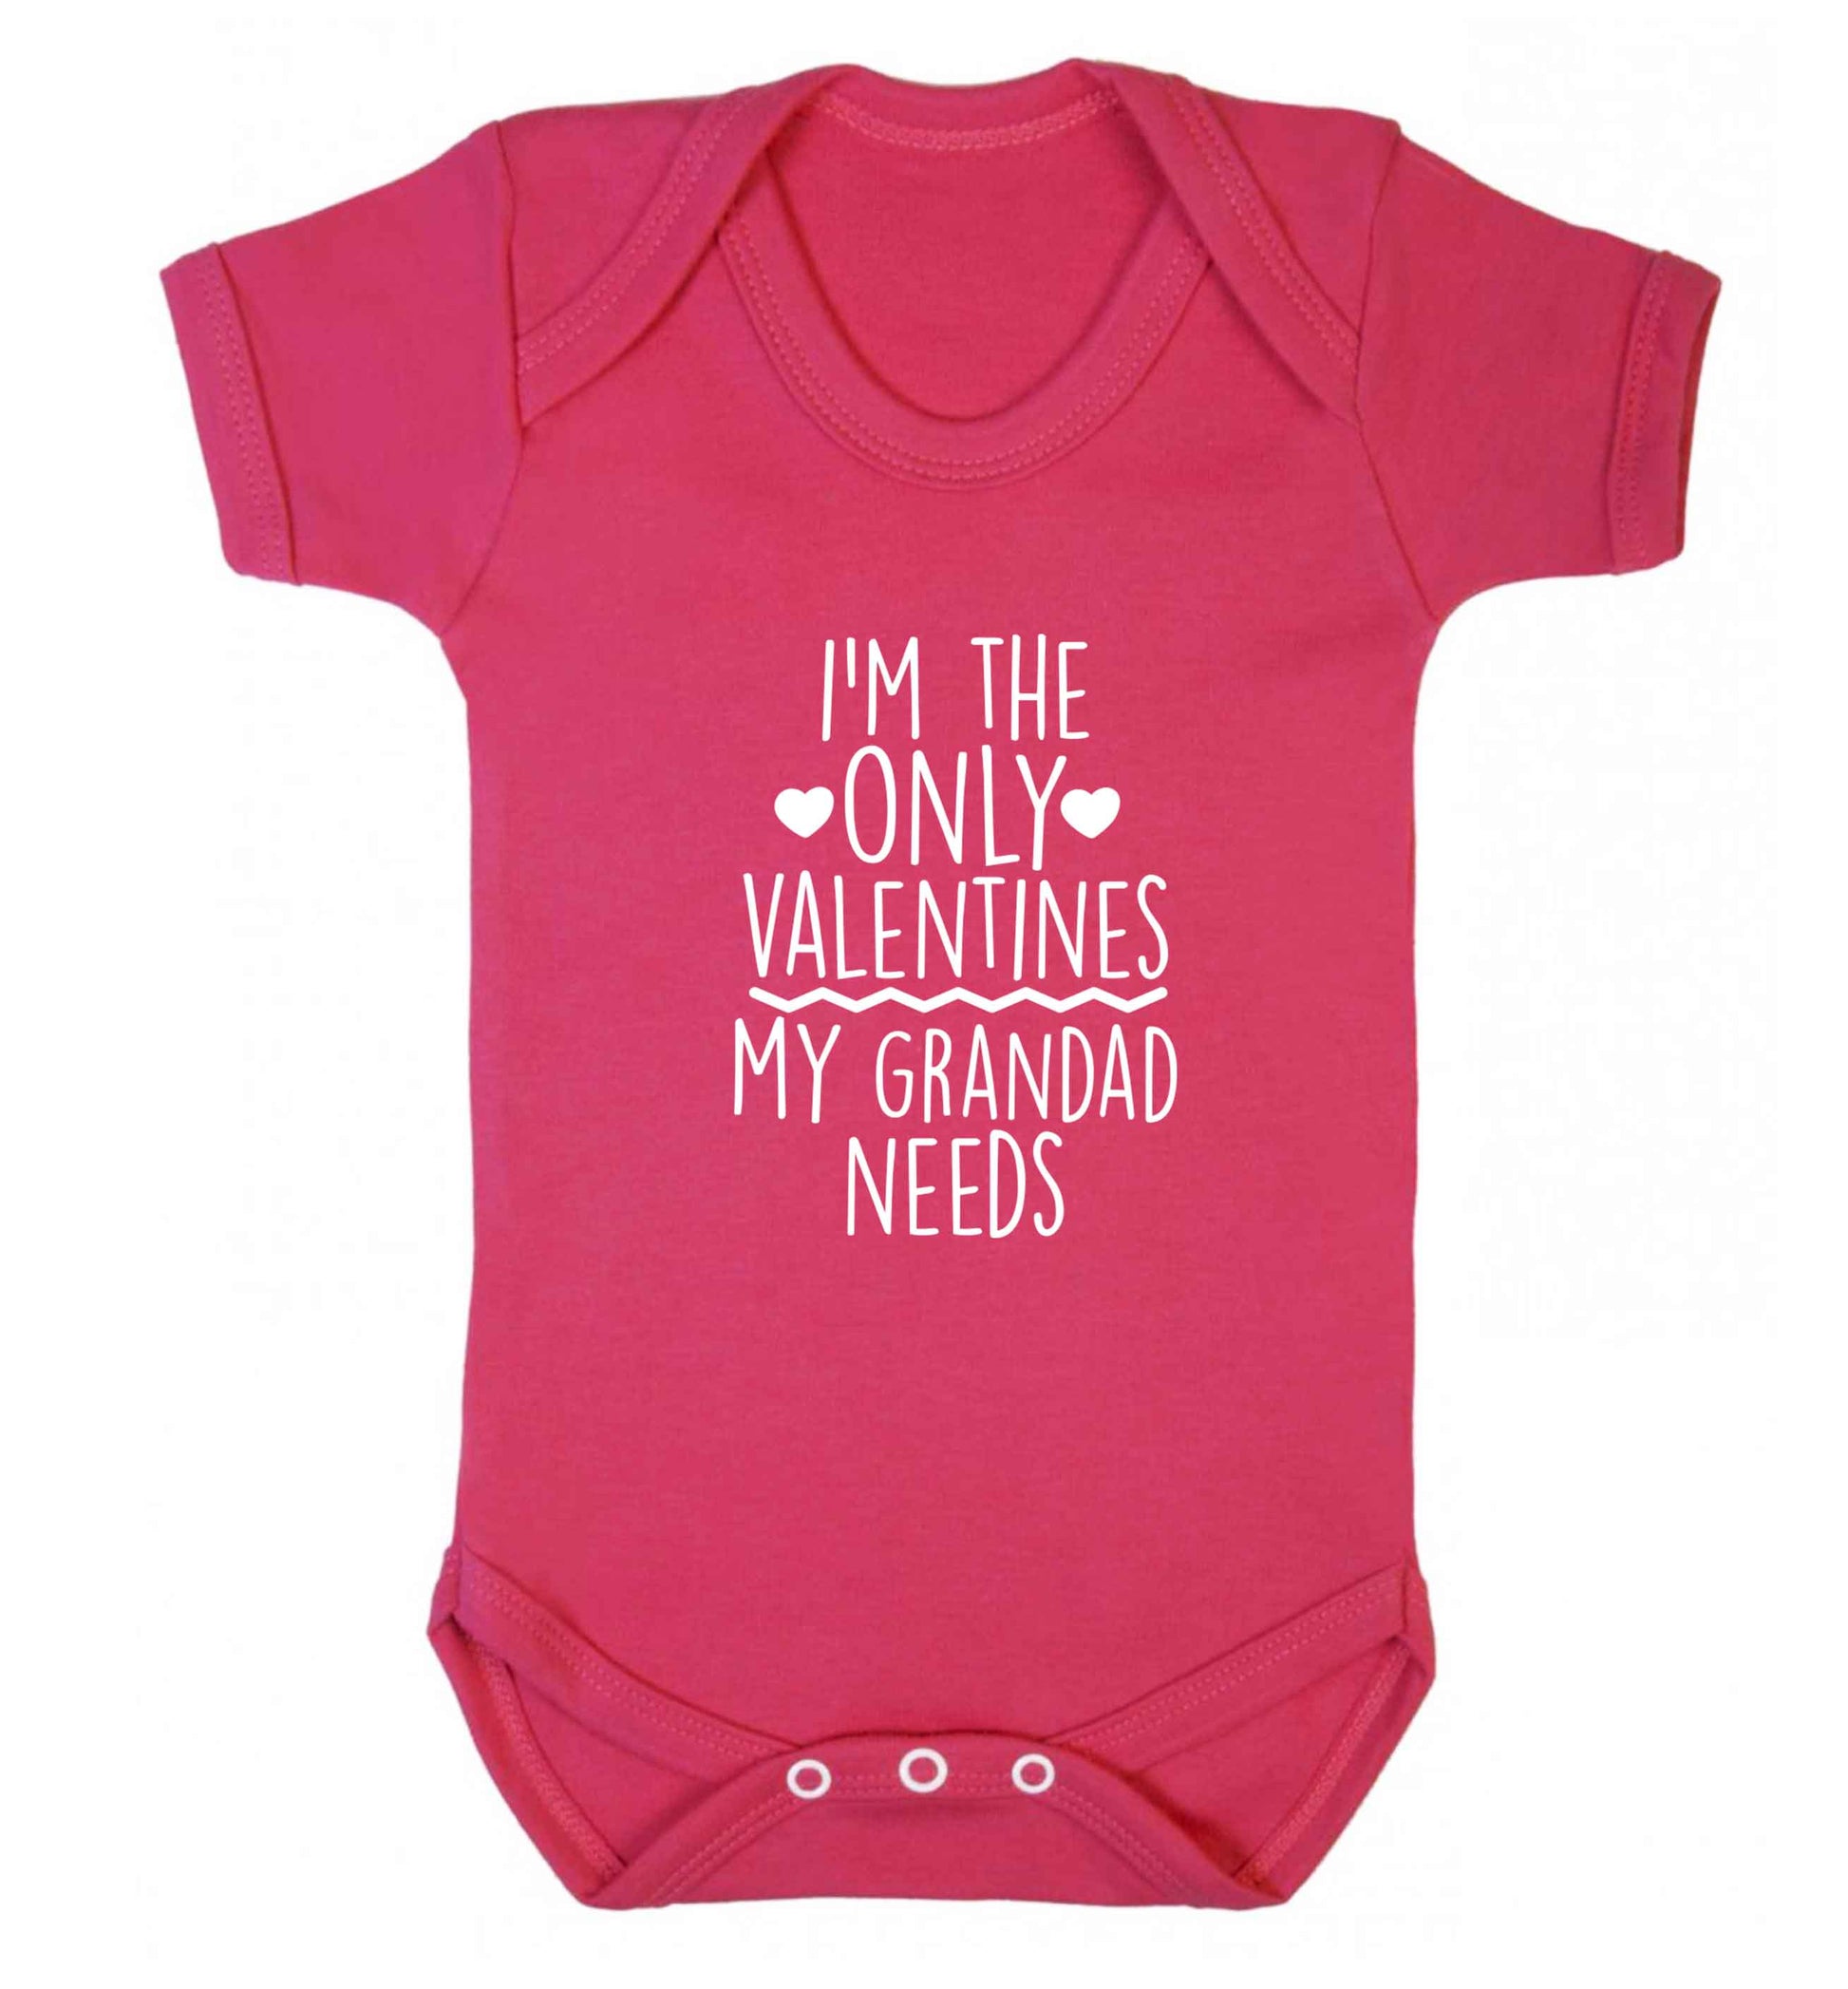 I'm the only valentines my grandad needs baby vest dark pink 18-24 months